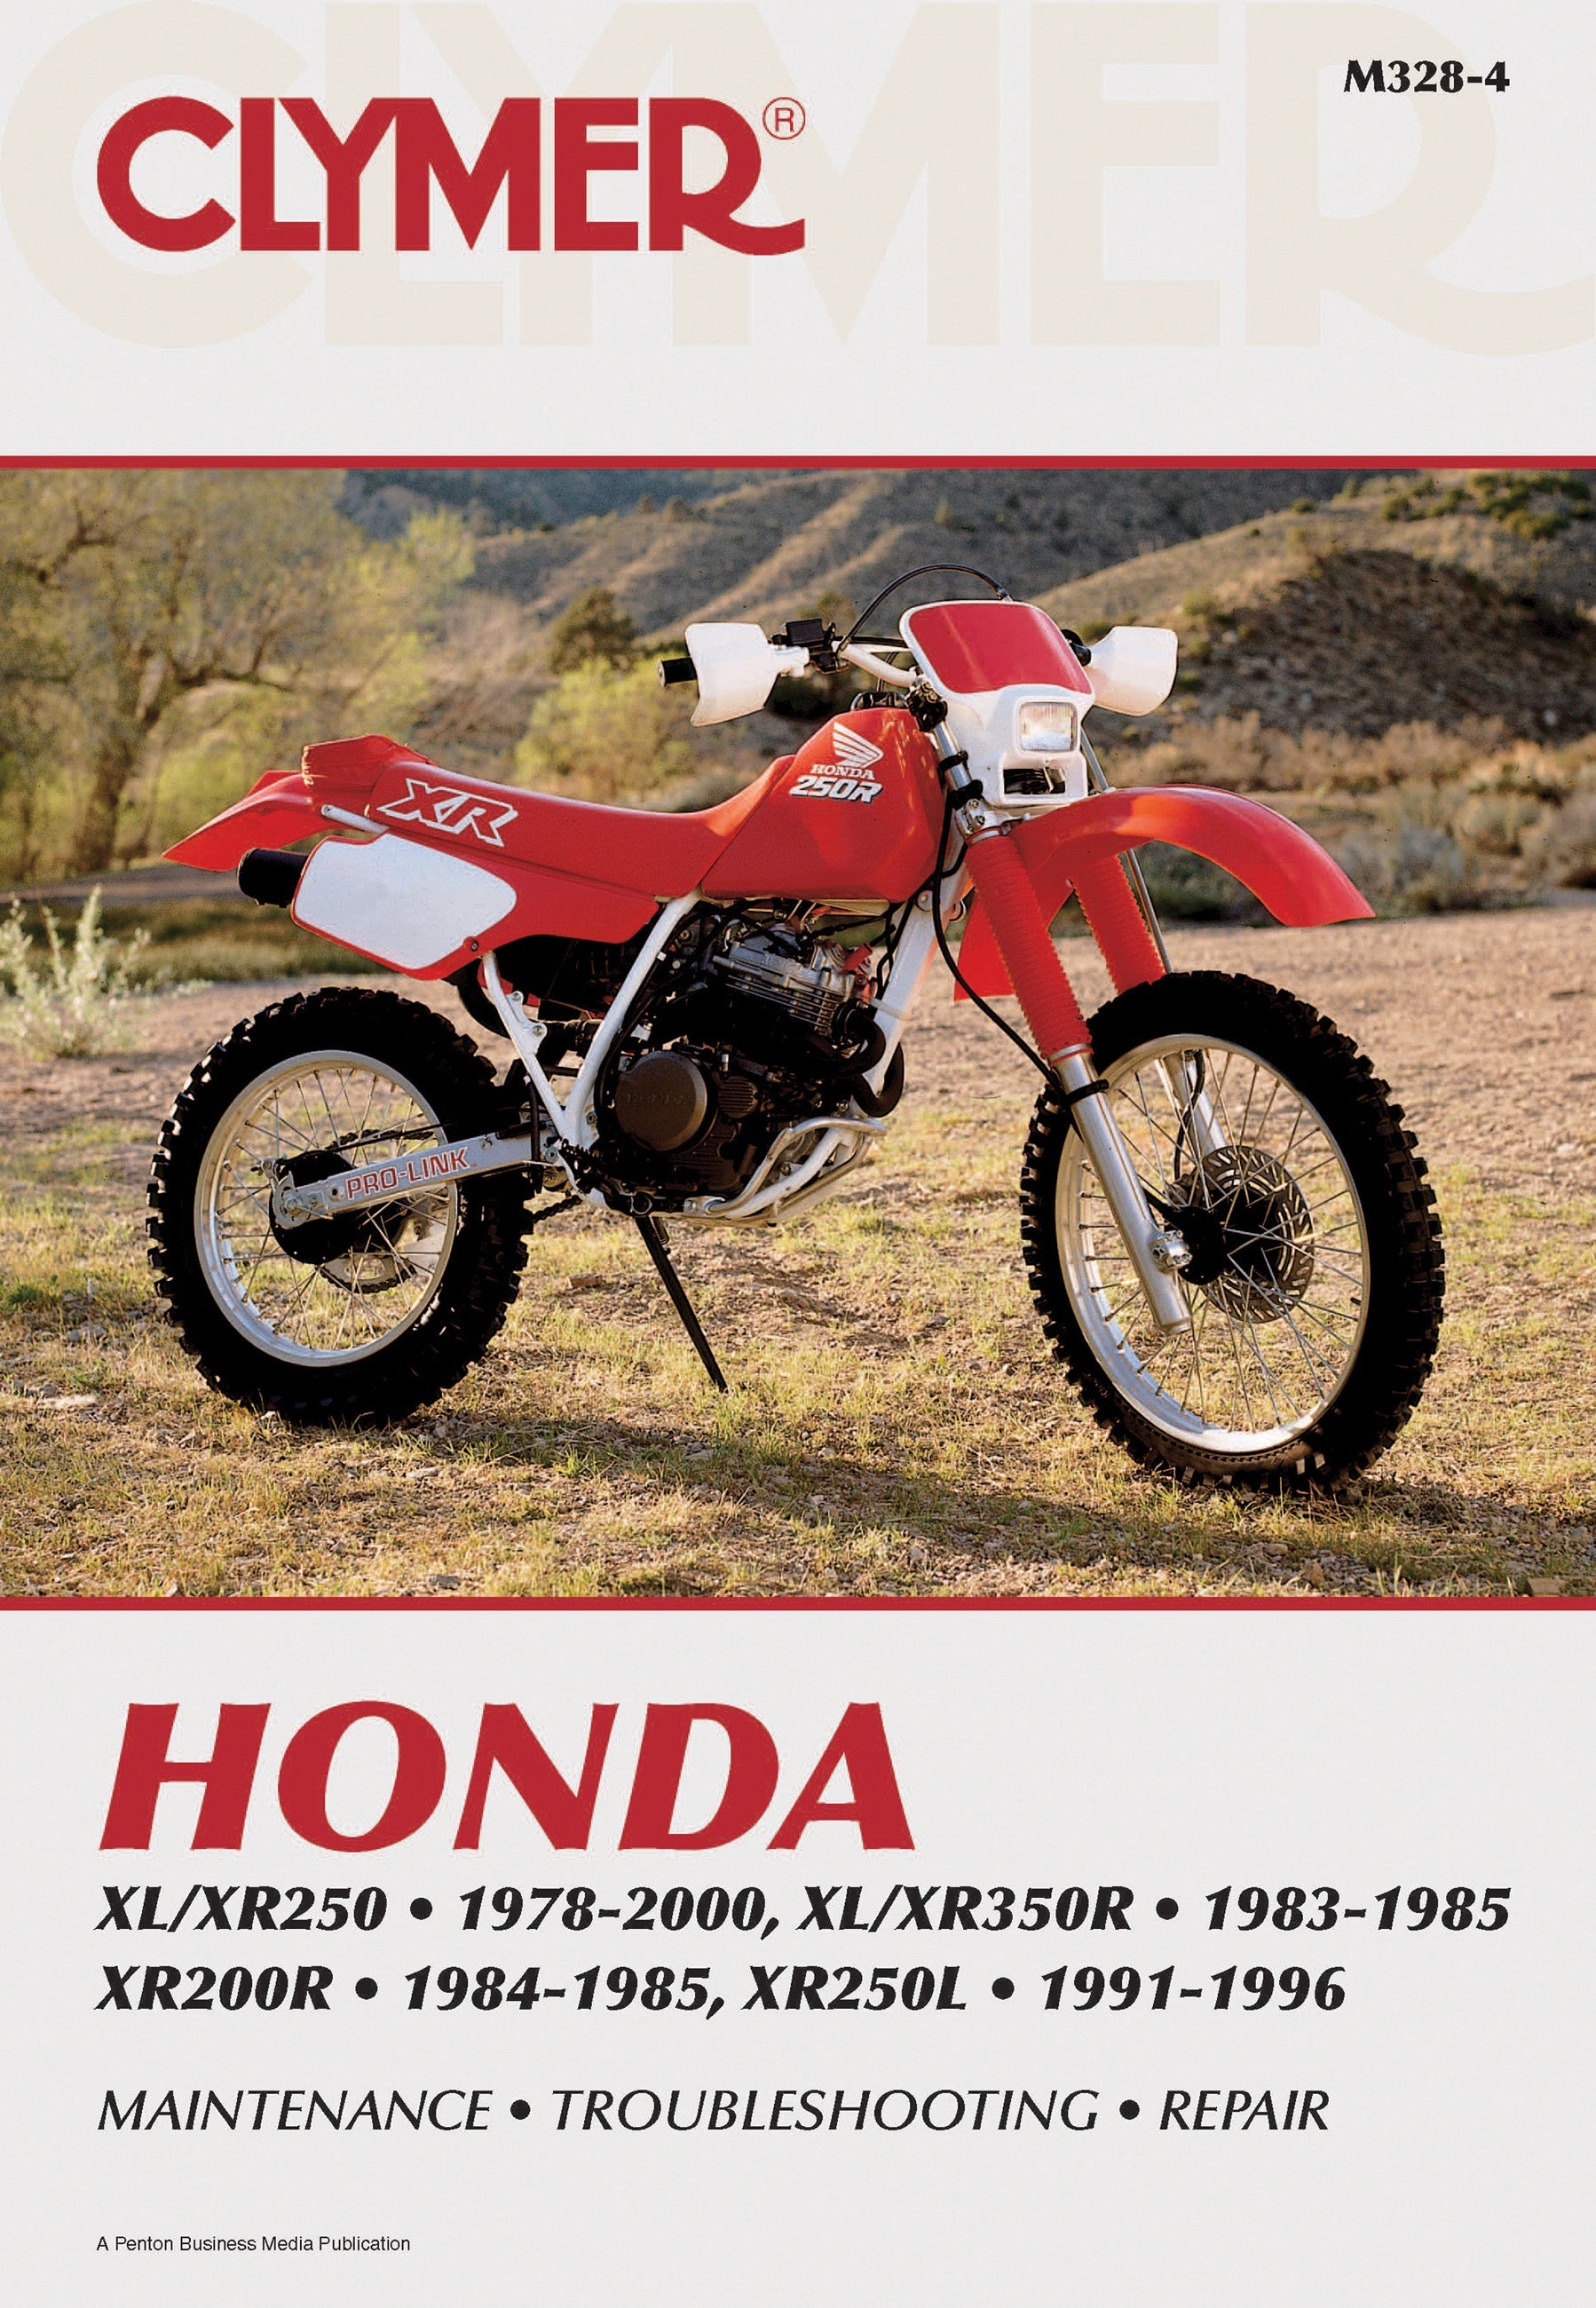 Honda XL 250R 1983 - Classificados de veículos antigos de coleção